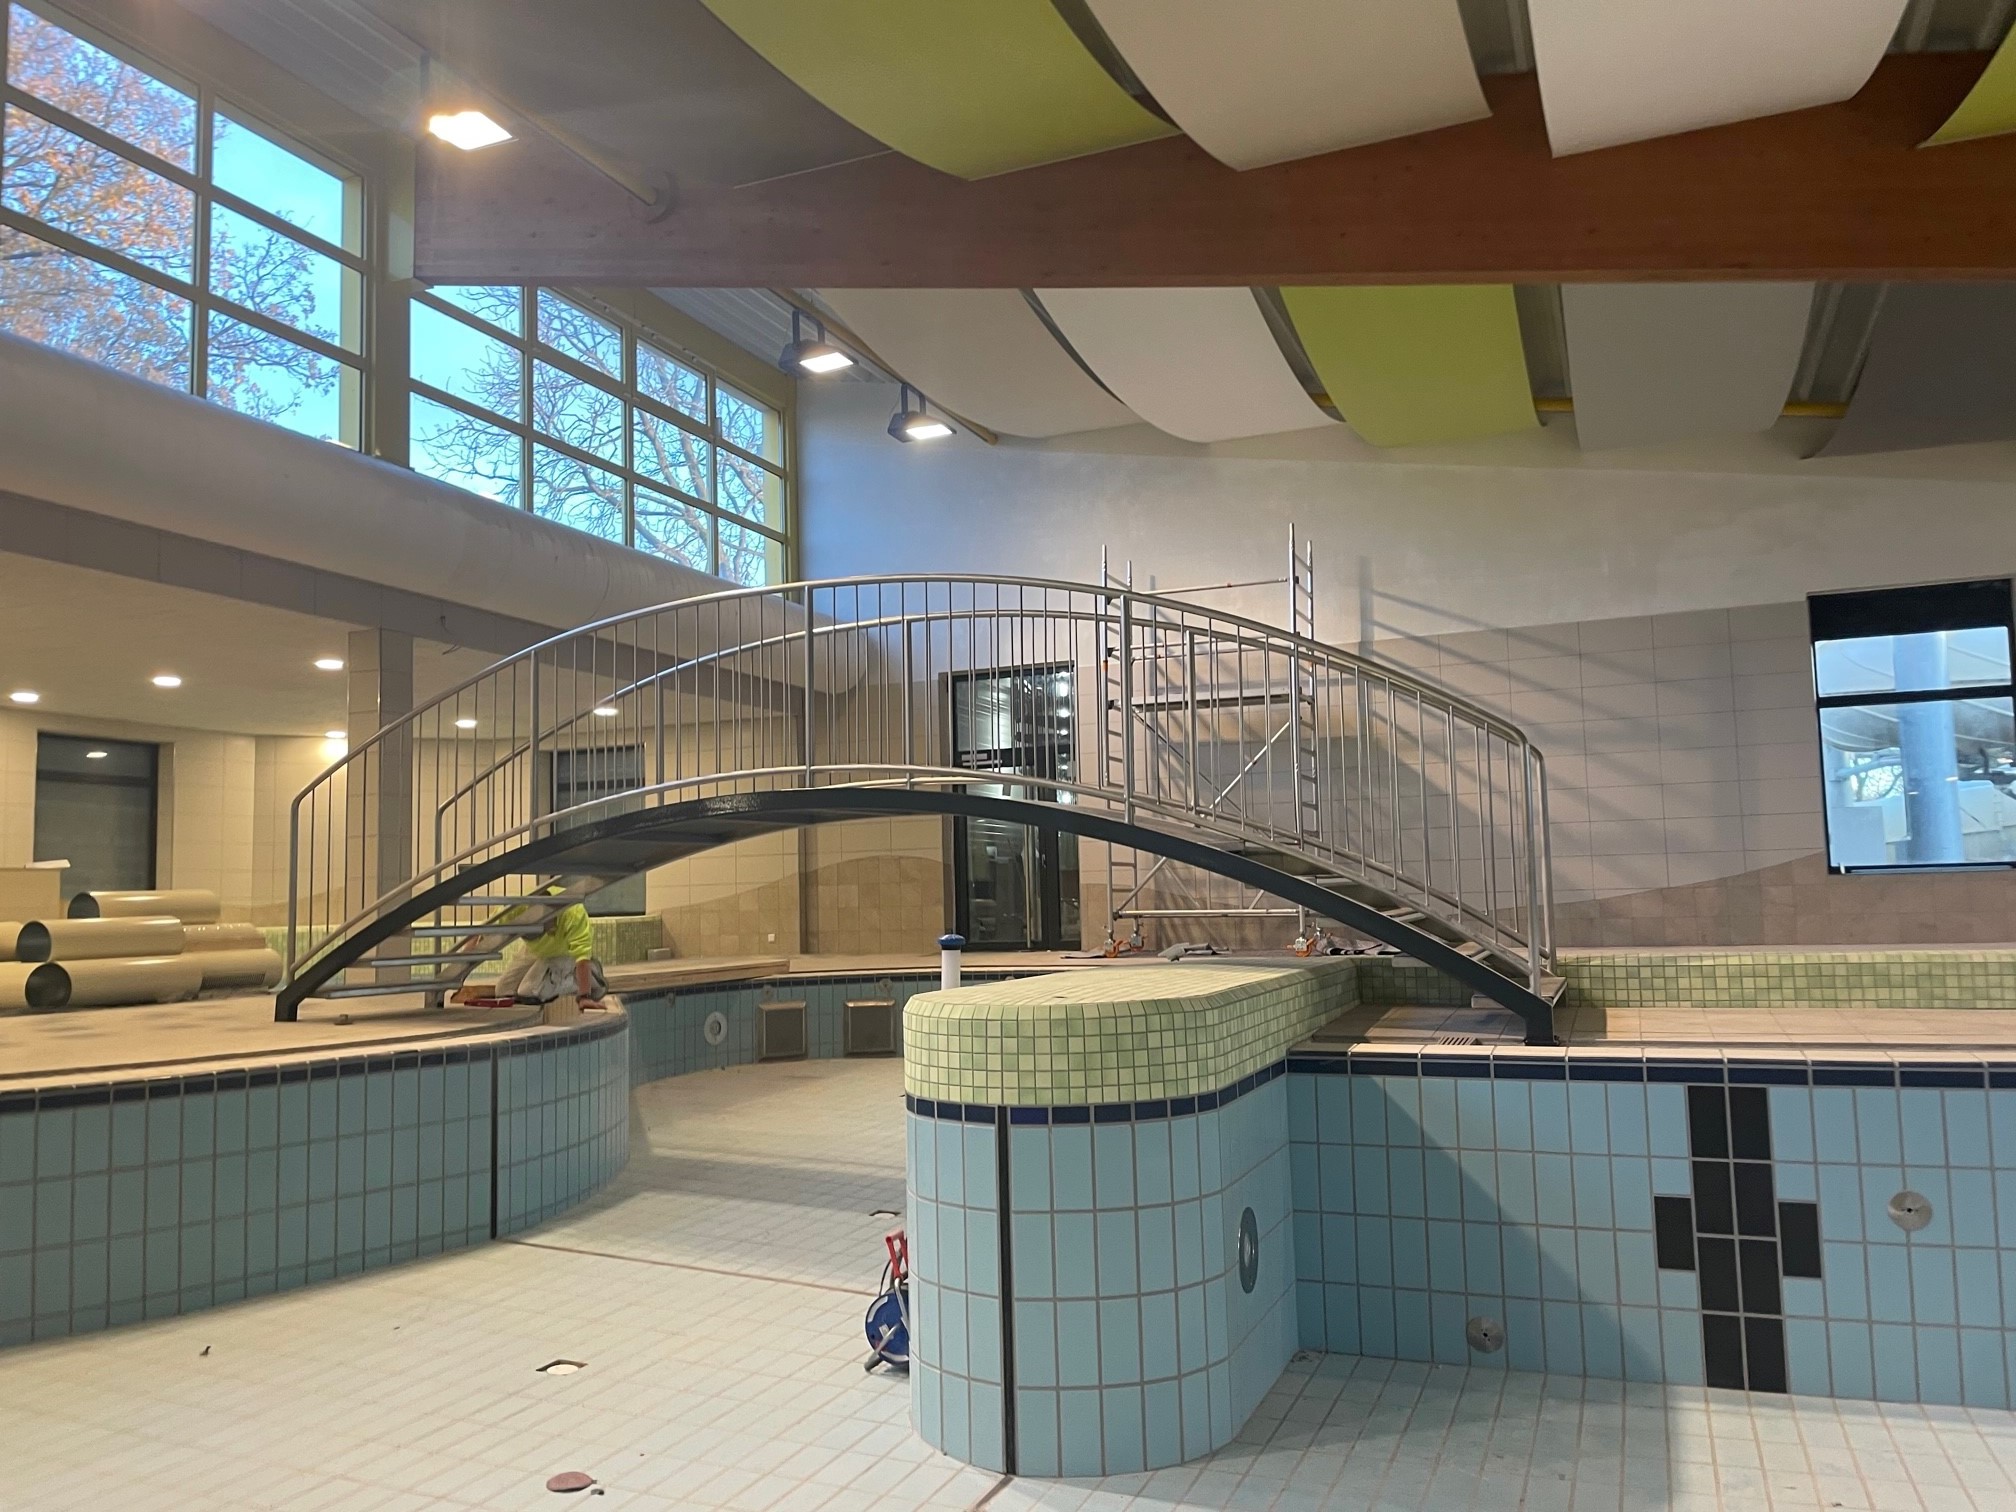 Das Bild zeigt ein leeres Schwimmbecken. Eine Brücke führt in den hinteren Teil des Hallenbades.